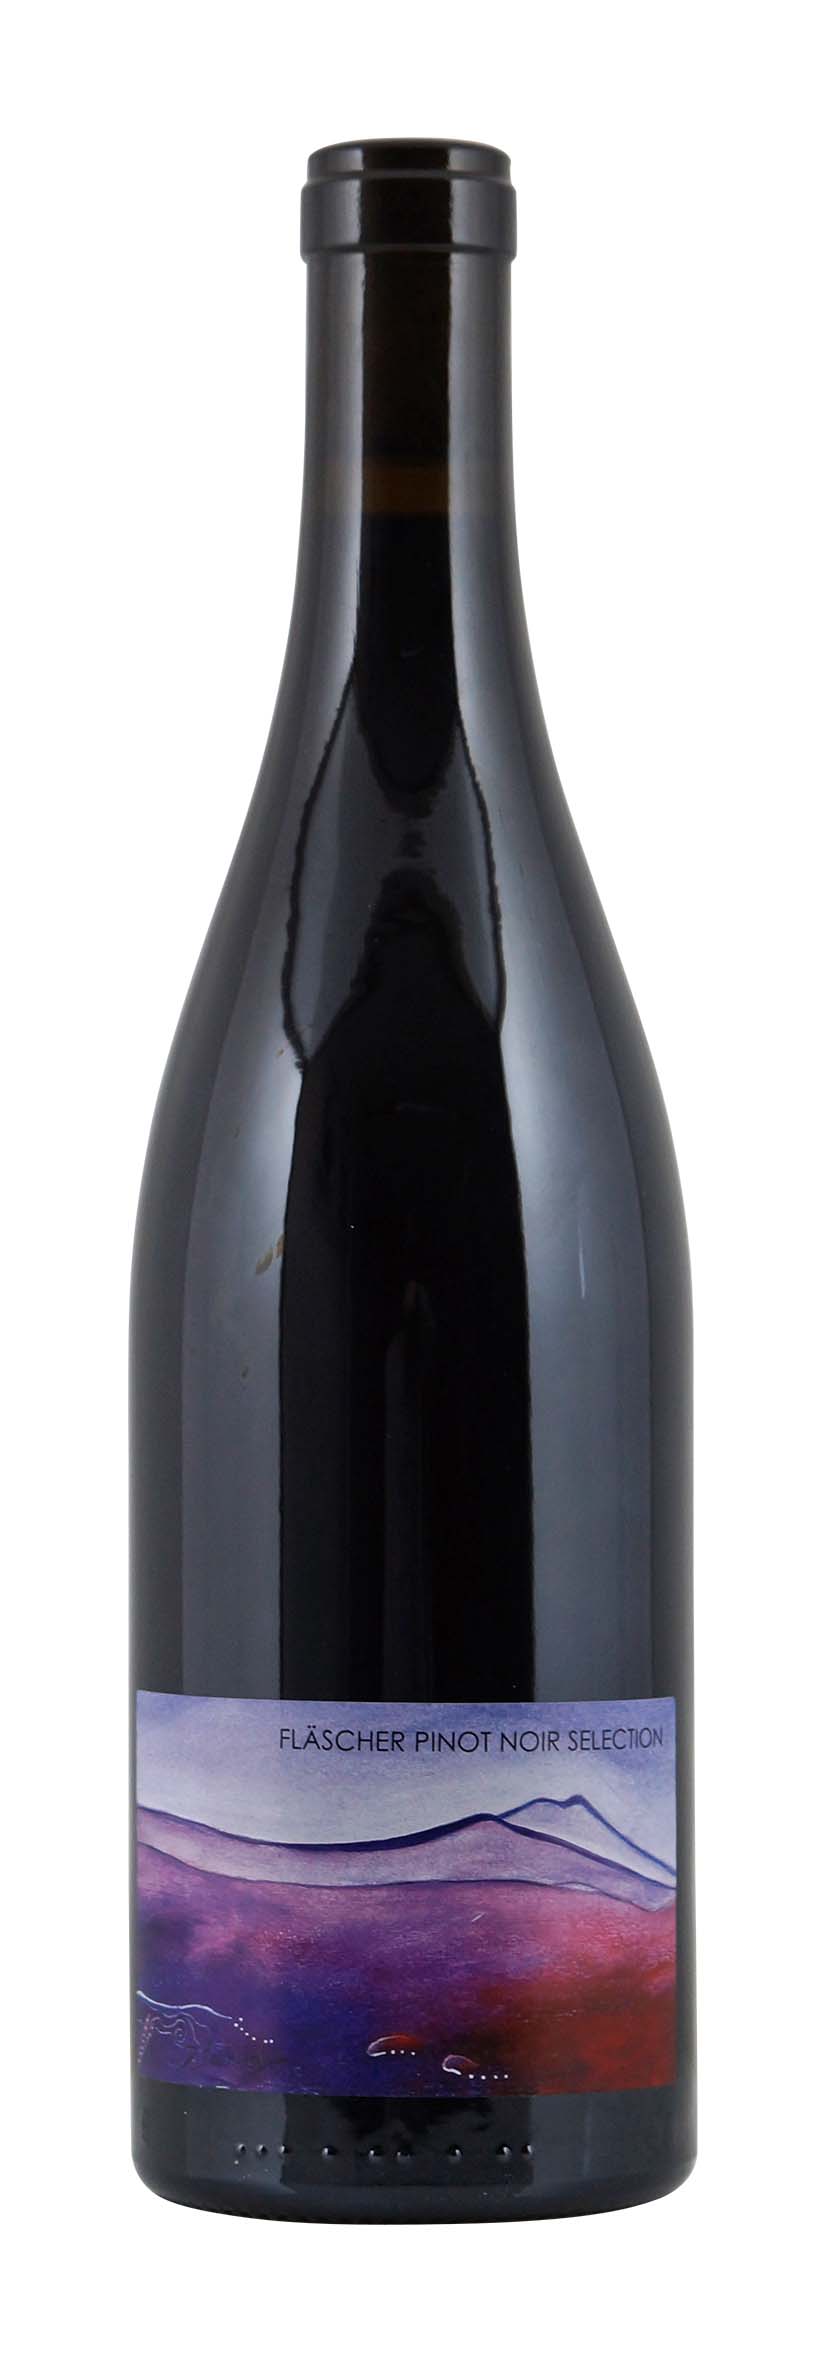 Graubünden AOC Fläscher Pinot Noir Selection 2011